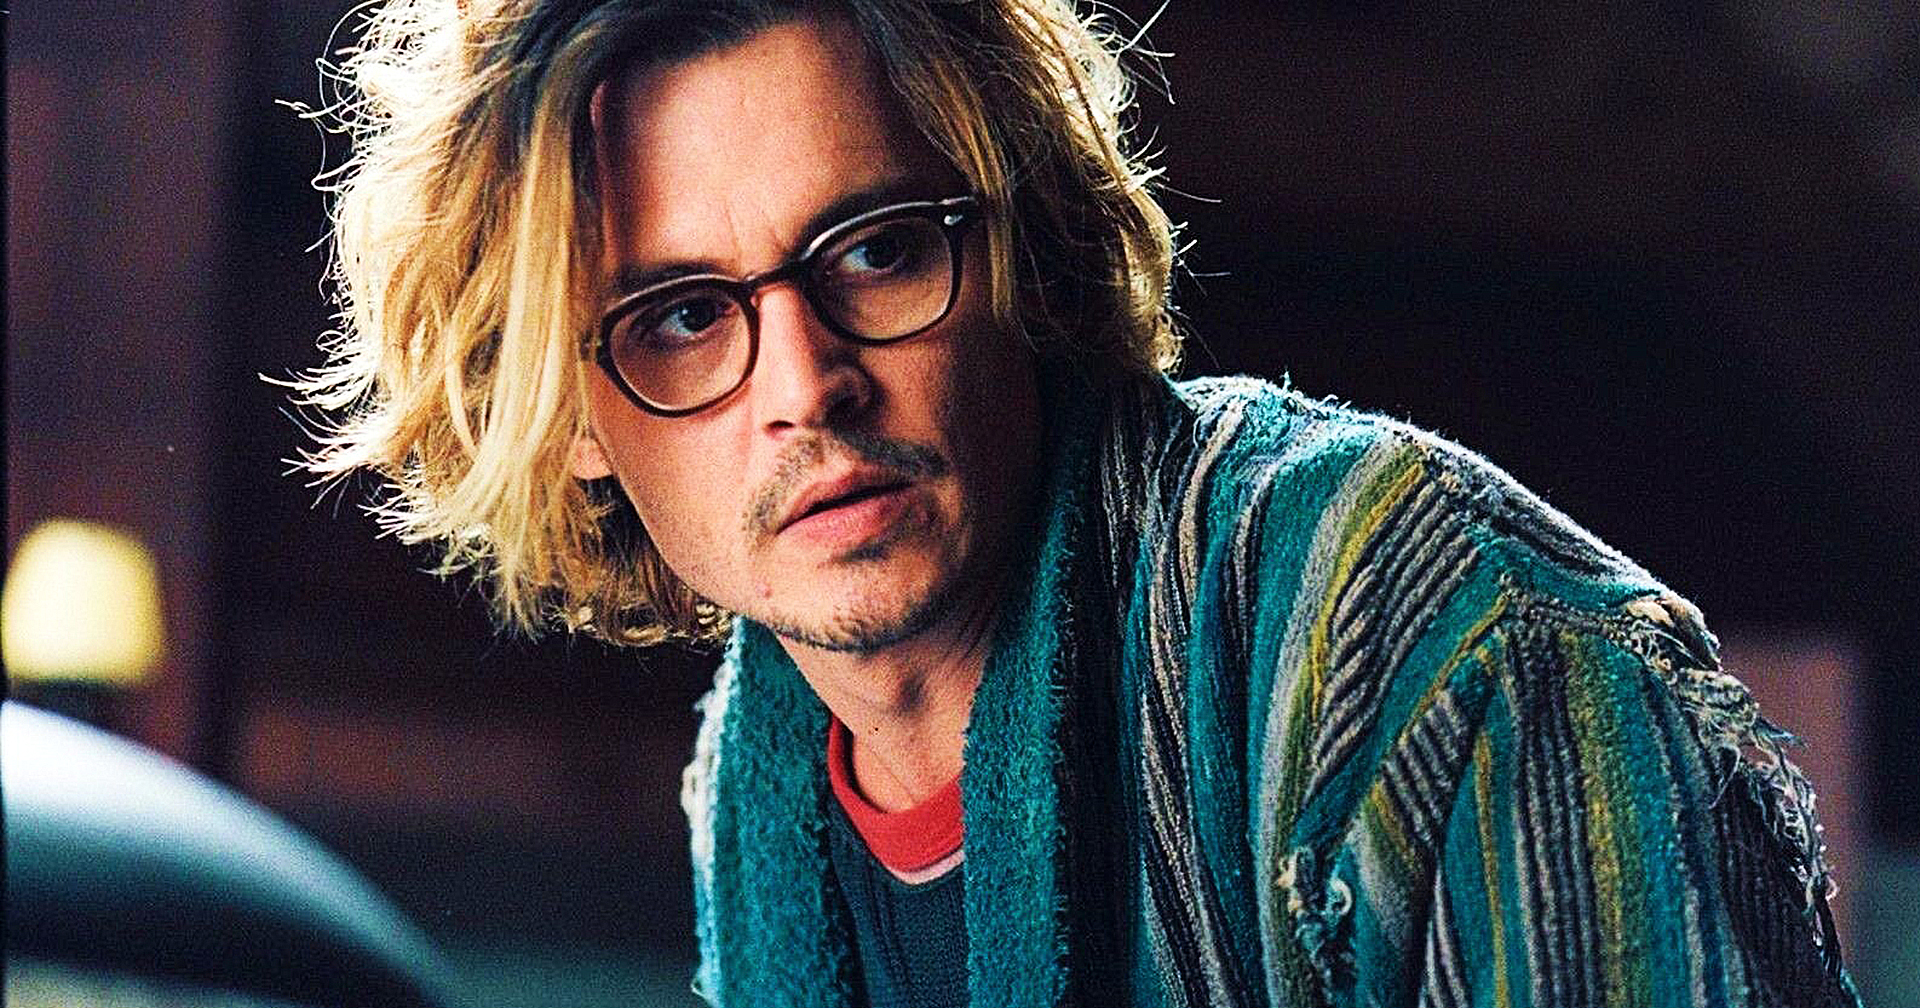 Johnny Depp กลับมารับงานแสดงเป็นครั้งแรกหลังชนะคดี: รับบทเป็น ‘พระเจ้าหลุยส์ที่ 15 แห่งฝรั่งเศส’